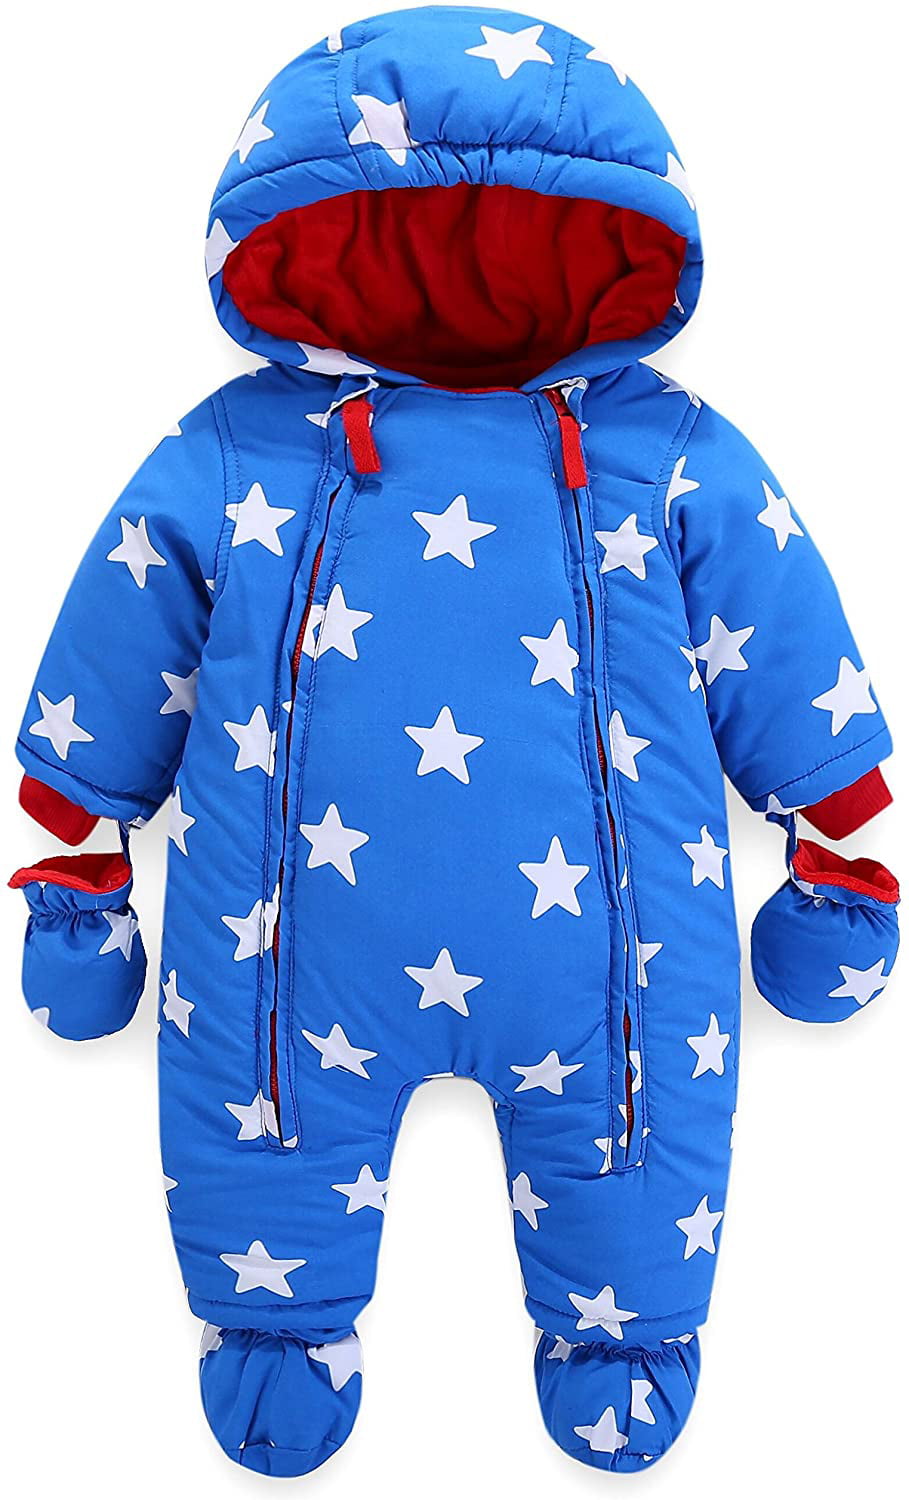 Baby Snowsuit Infant Hooded Romper Winter Jumpsuit Zipper Front 